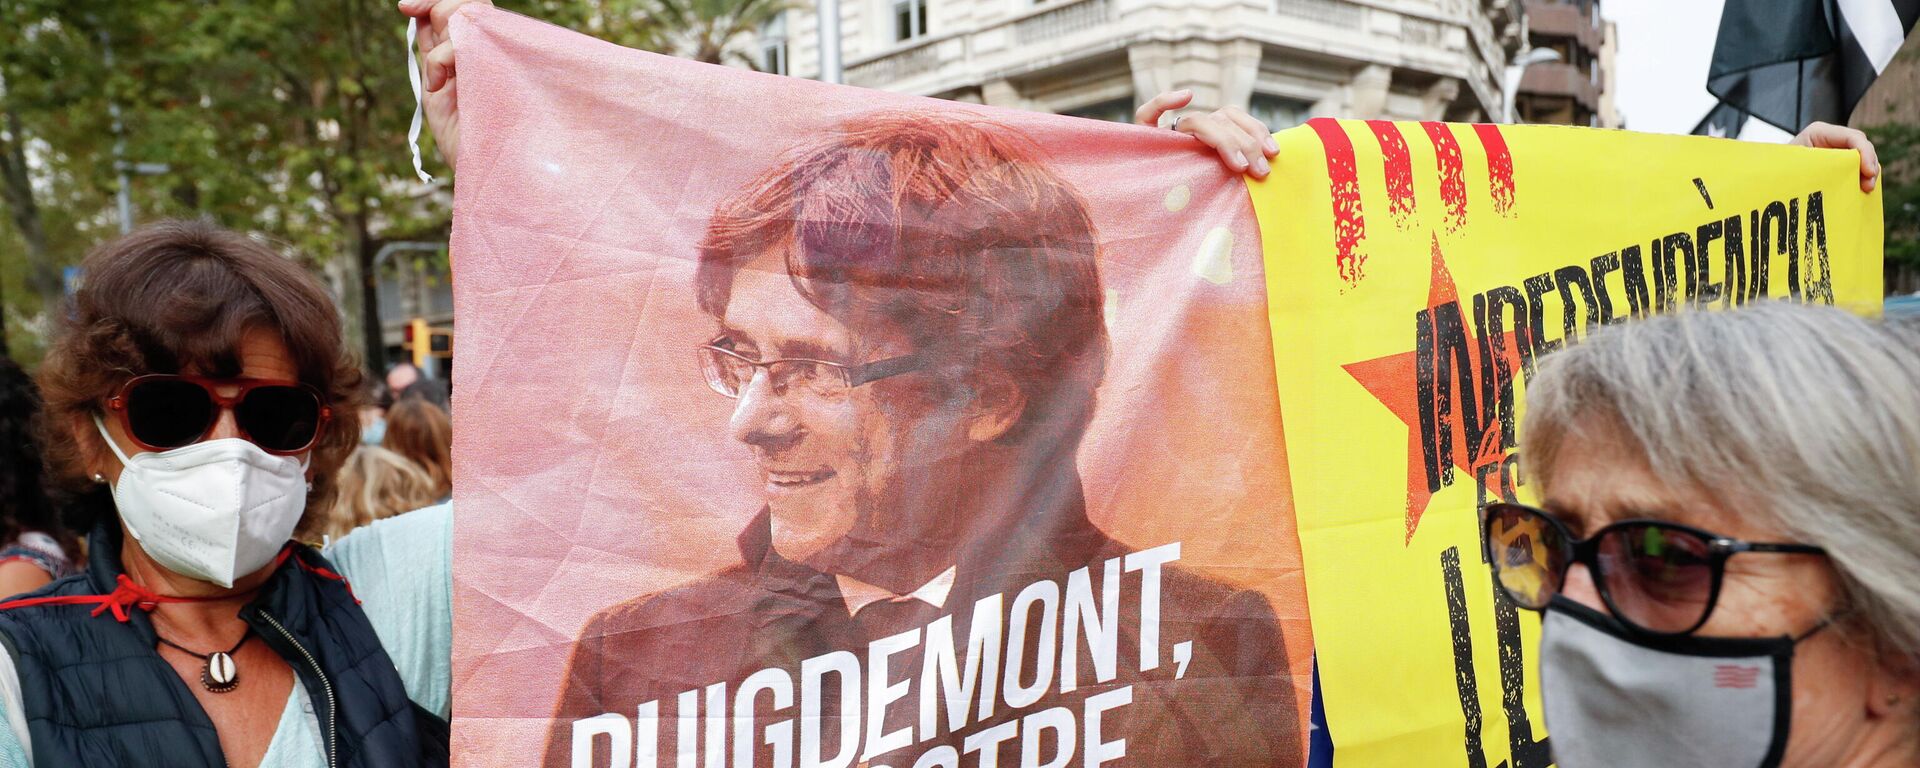 Protesta contra la detención del expresidente de Cataluña, Carles Puigdemont - Sputnik Mundo, 1920, 24.09.2021